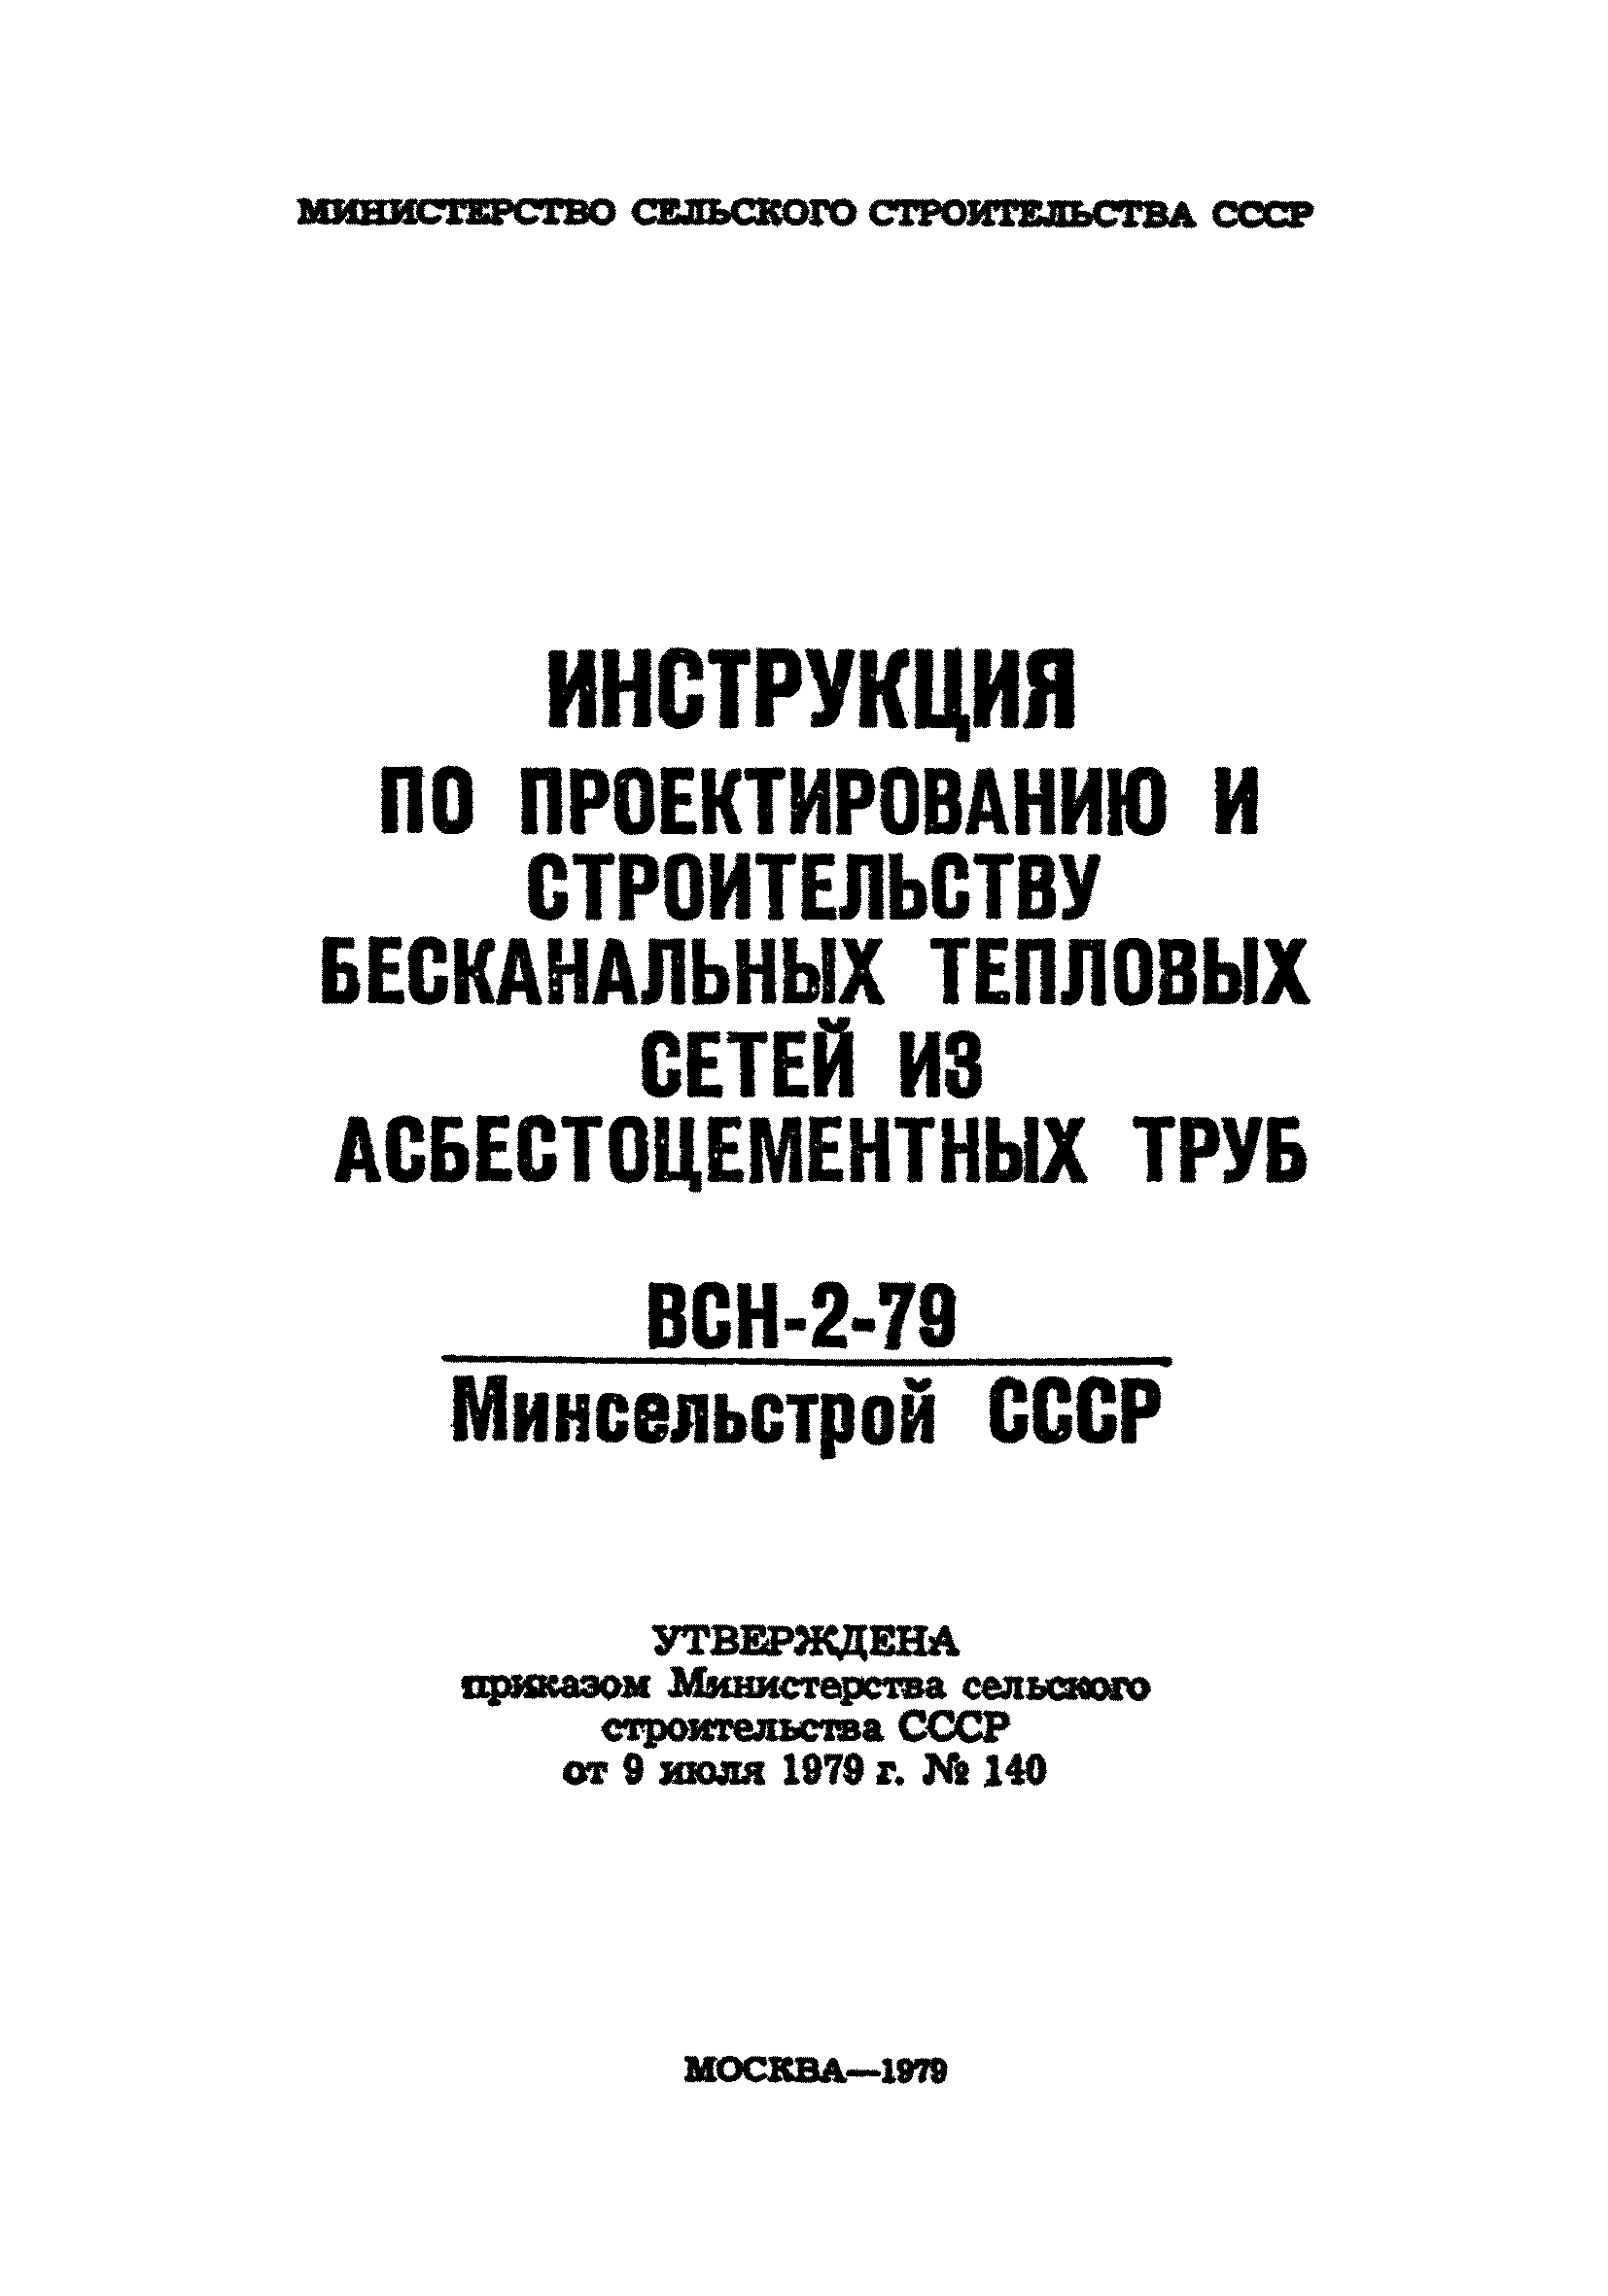 ВСН 2-79/Минсельстрой СССР